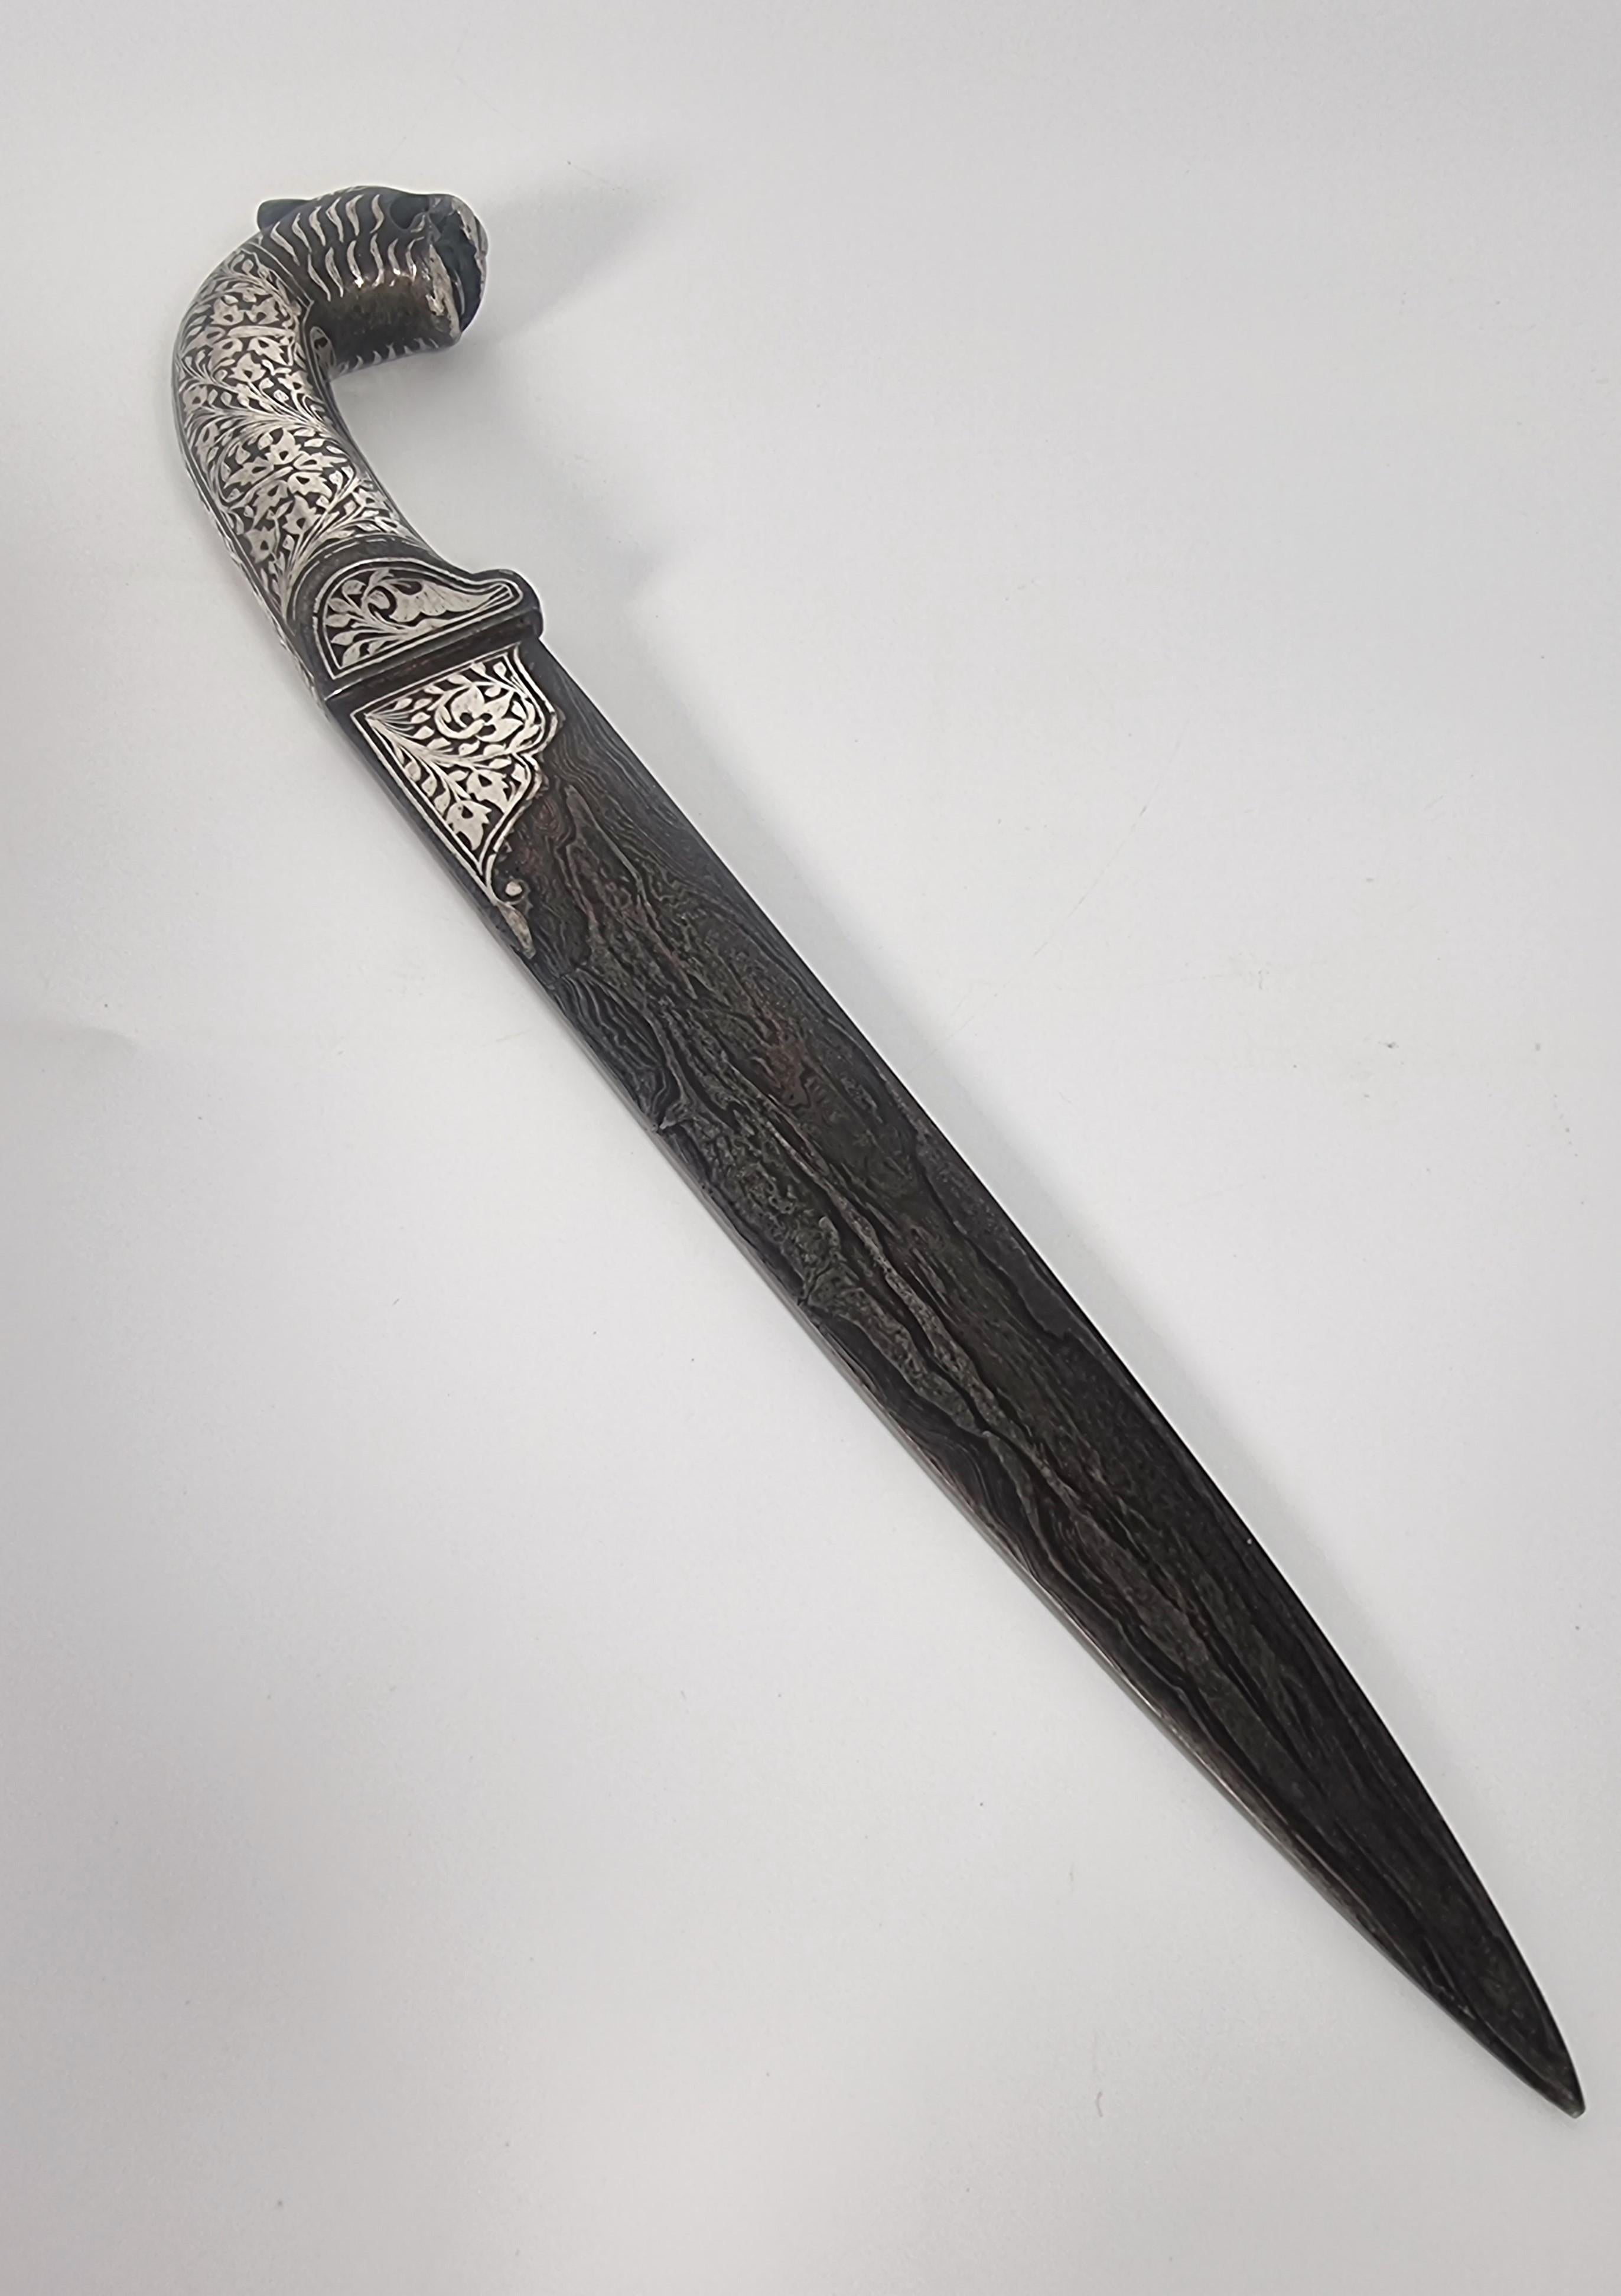 Ein feiner, verzierter indischer Dolch aus dem 19. Jahrhundert, der aus handgeschmiedetem, gefaltetem Stahl, dem so genannten Damast, hergestellt wurde, der auf der Klinge ein fast holzähnliches Muster aufweist.

Das gesamte Messer ist aus massivem